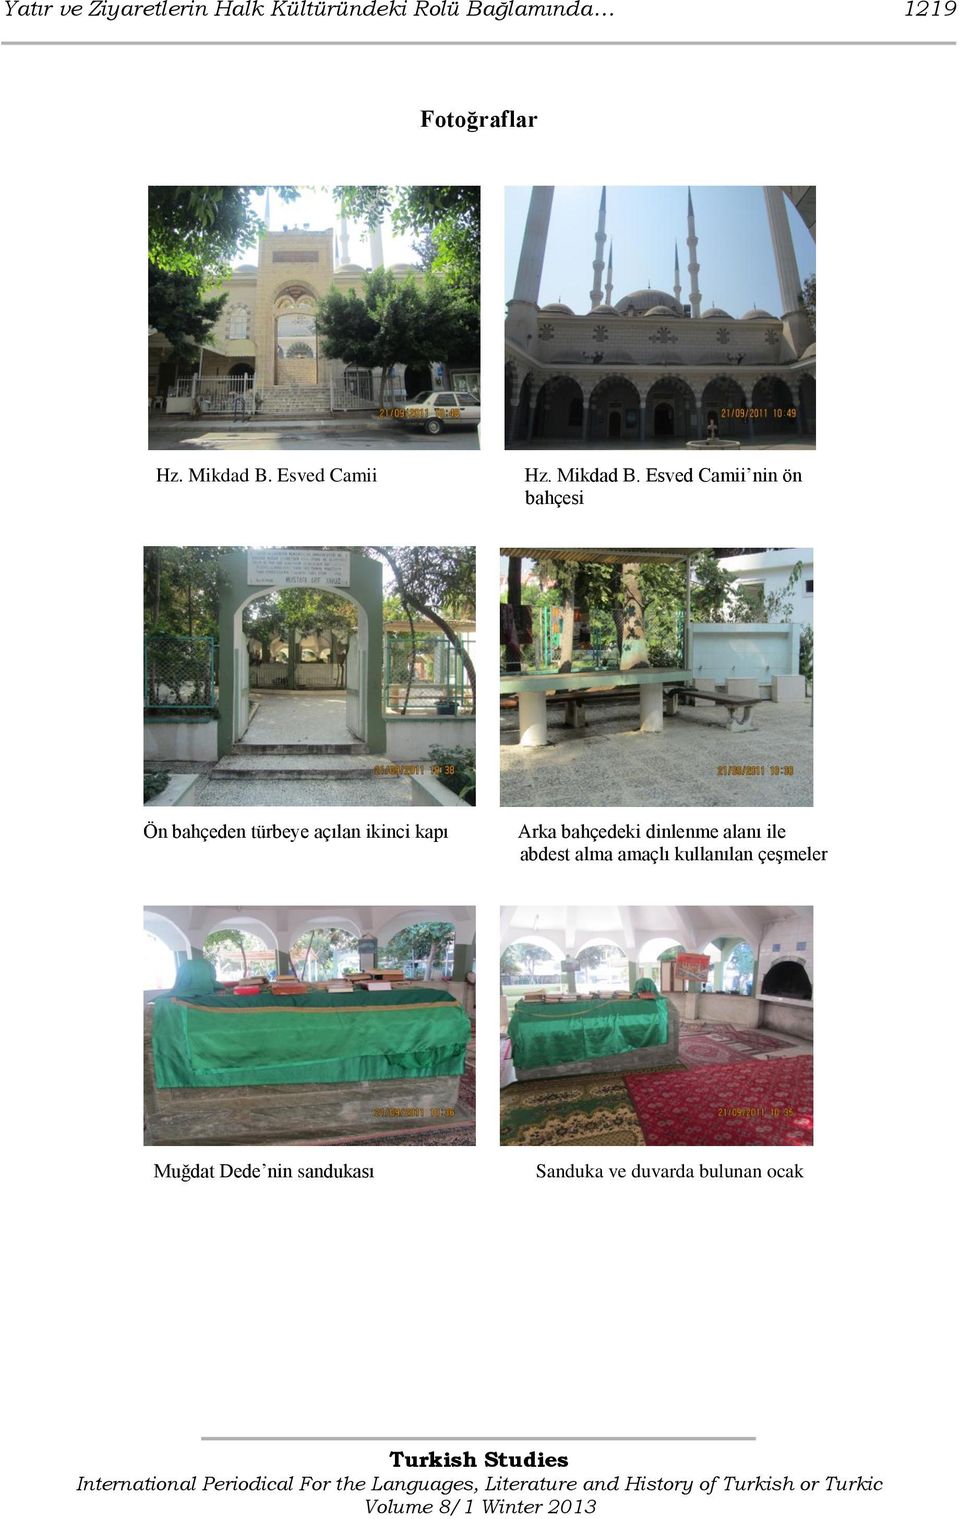 Esved Camii nin ön bahçesi Ön bahçeden türbeye açılan ikinci kapı Arka